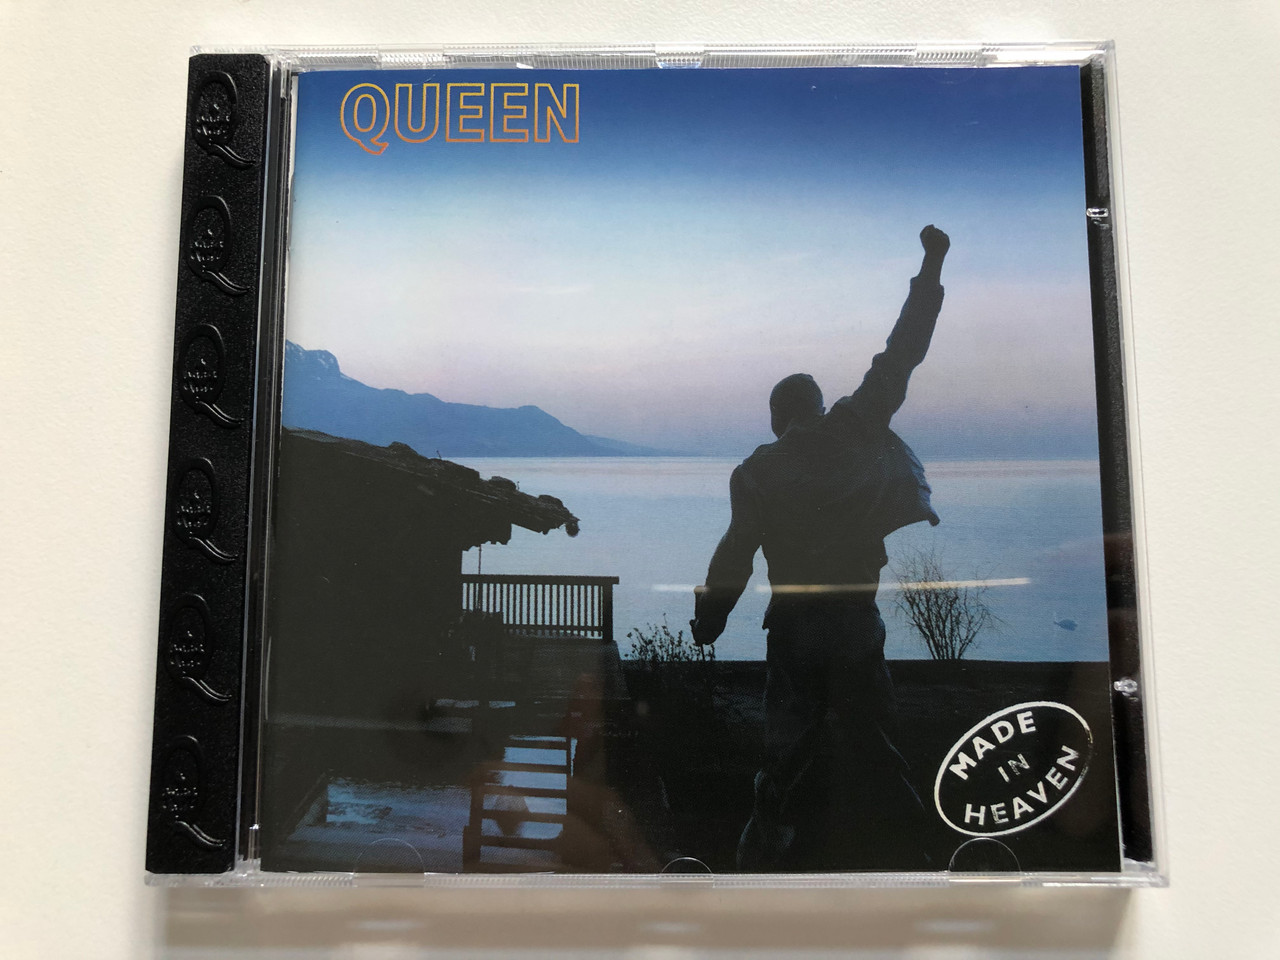 Queen - Made In Heaven / Parlophone Audio CD 1995 / 724383608829 -  bibleinmylanguage